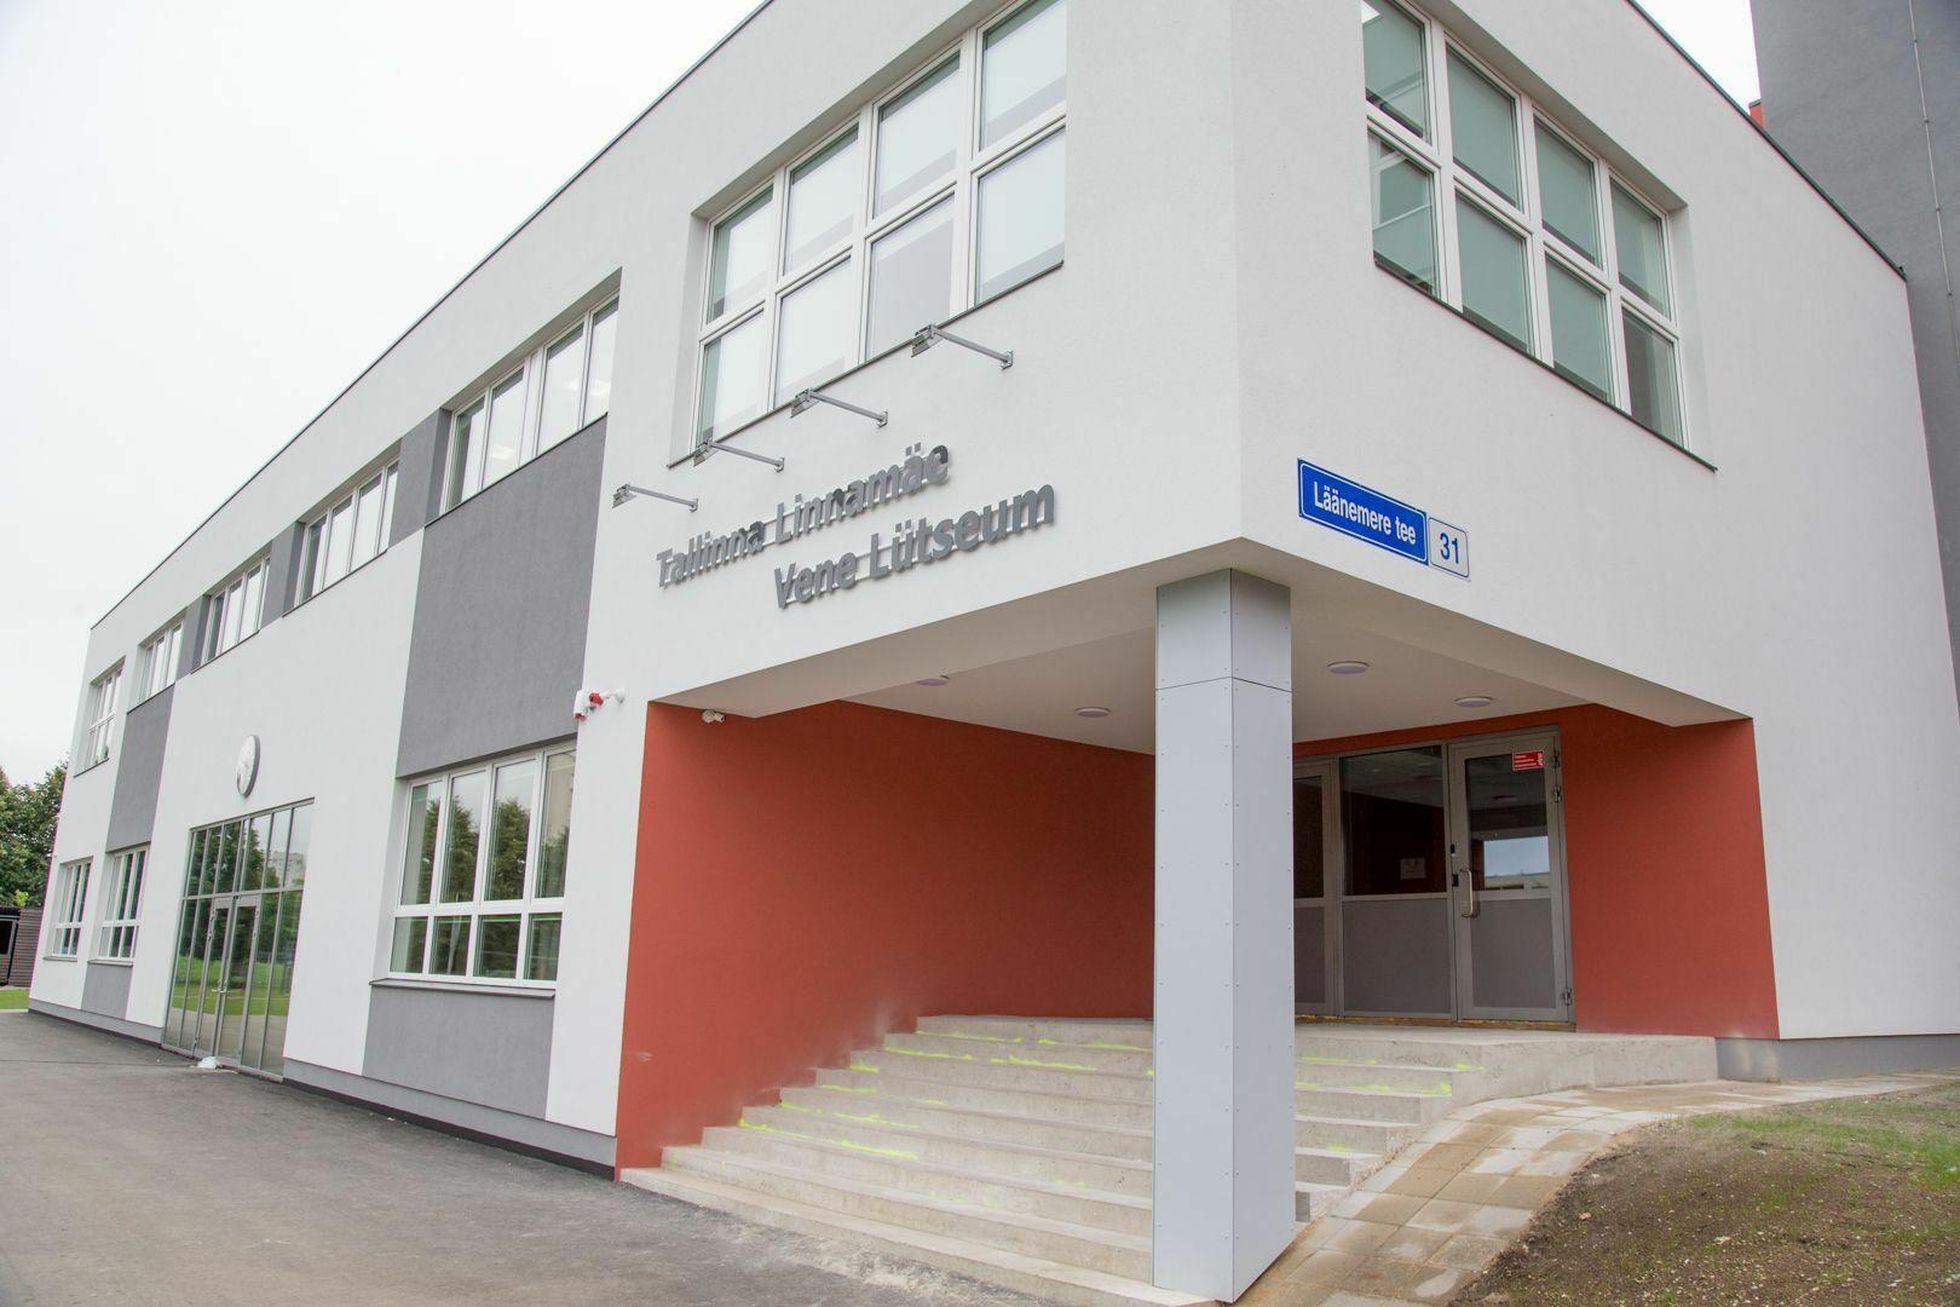 Tаллиннский Линнамяэский русский лицей - одна из крупнейших русских школ в Эстонии.